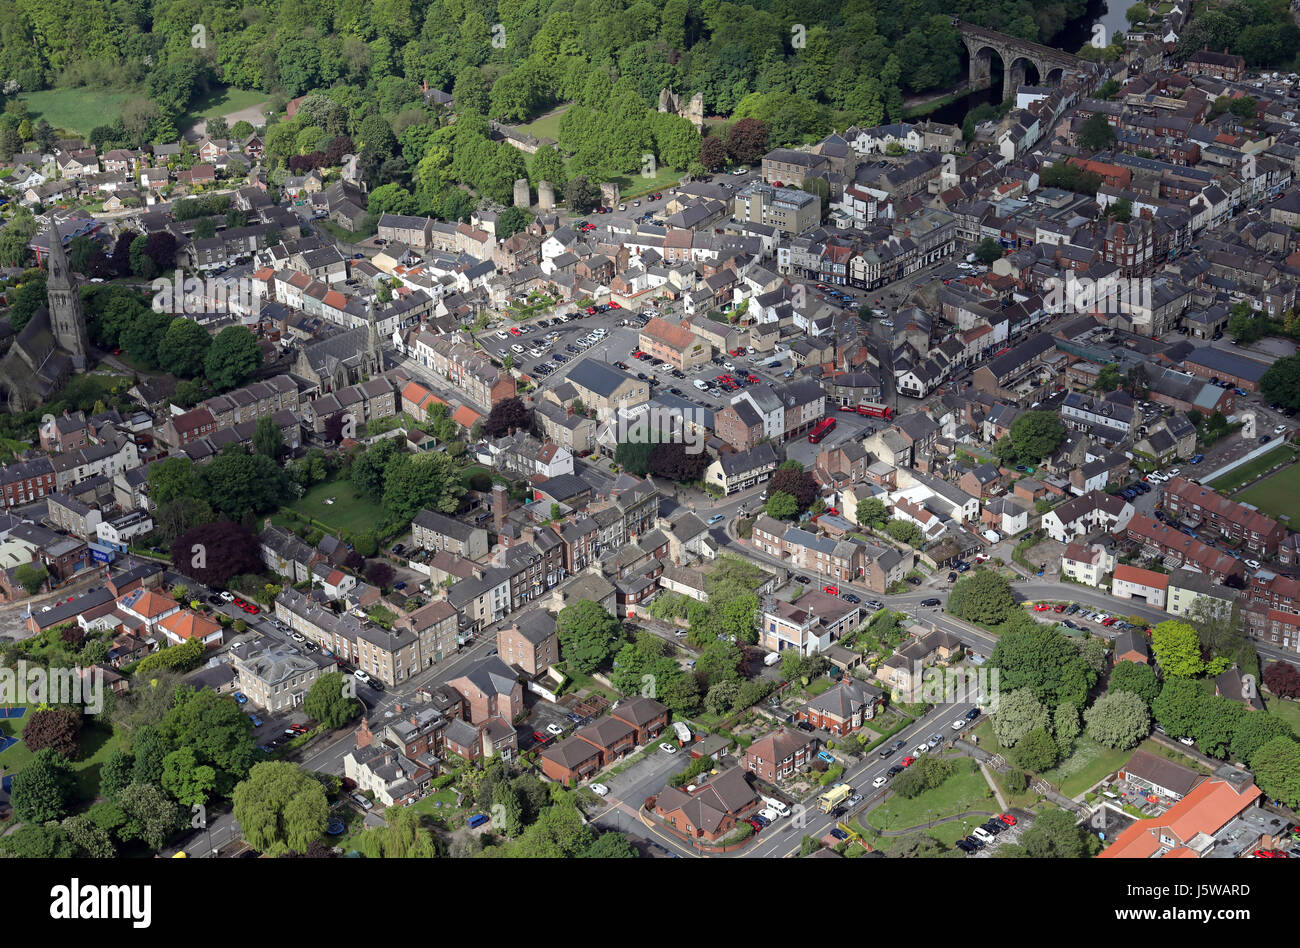 Vue aérienne de la ville de North Yorkshire, UK Knaresborough Banque D'Images